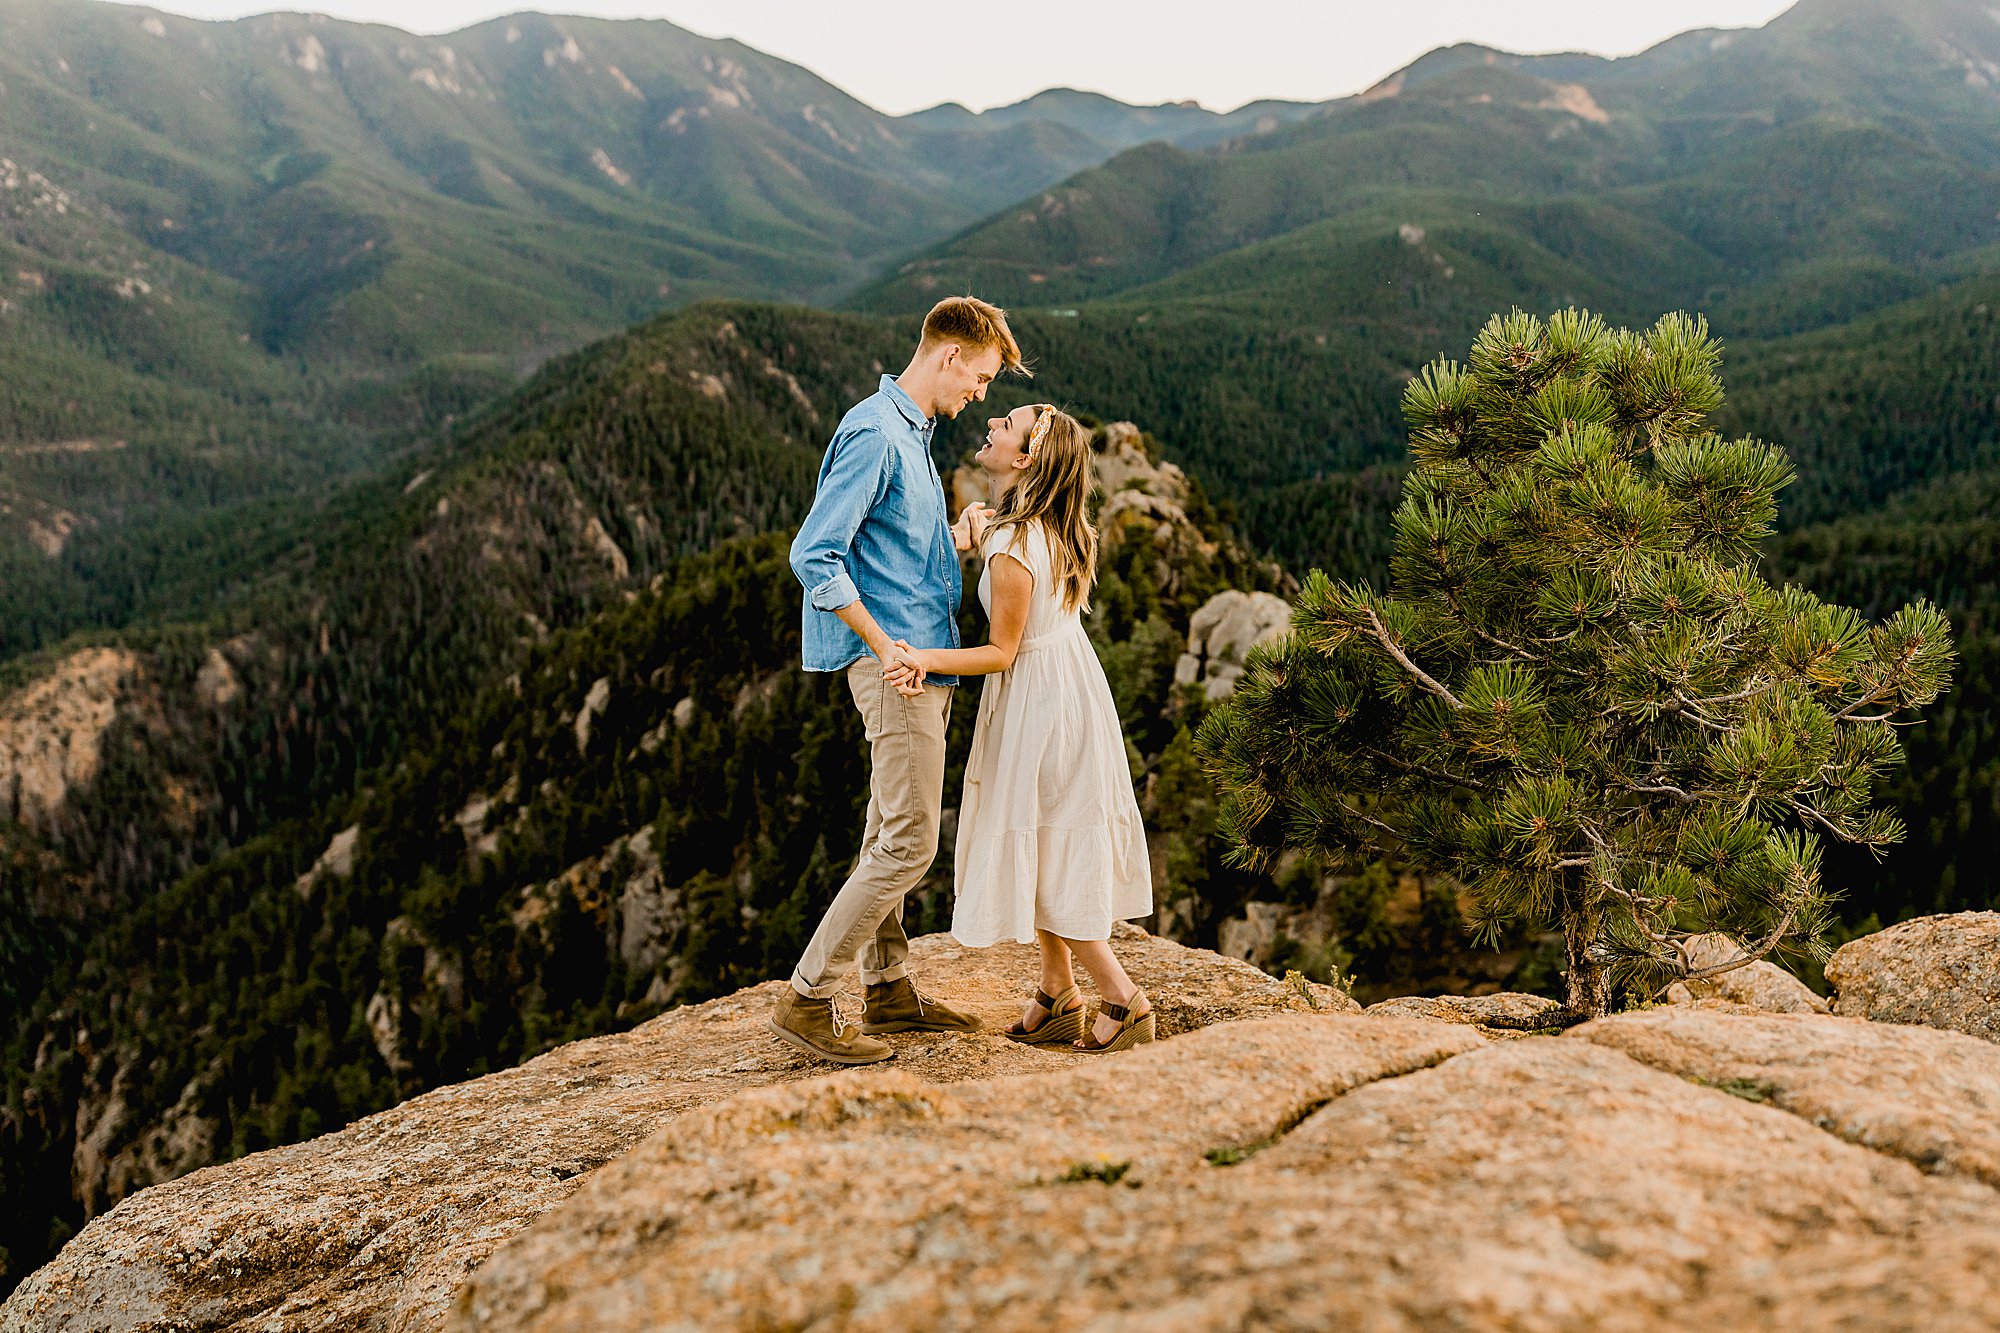 colorado mountain engagement photos, lauren casino photographs couple having fun in the stunning colorado mountains